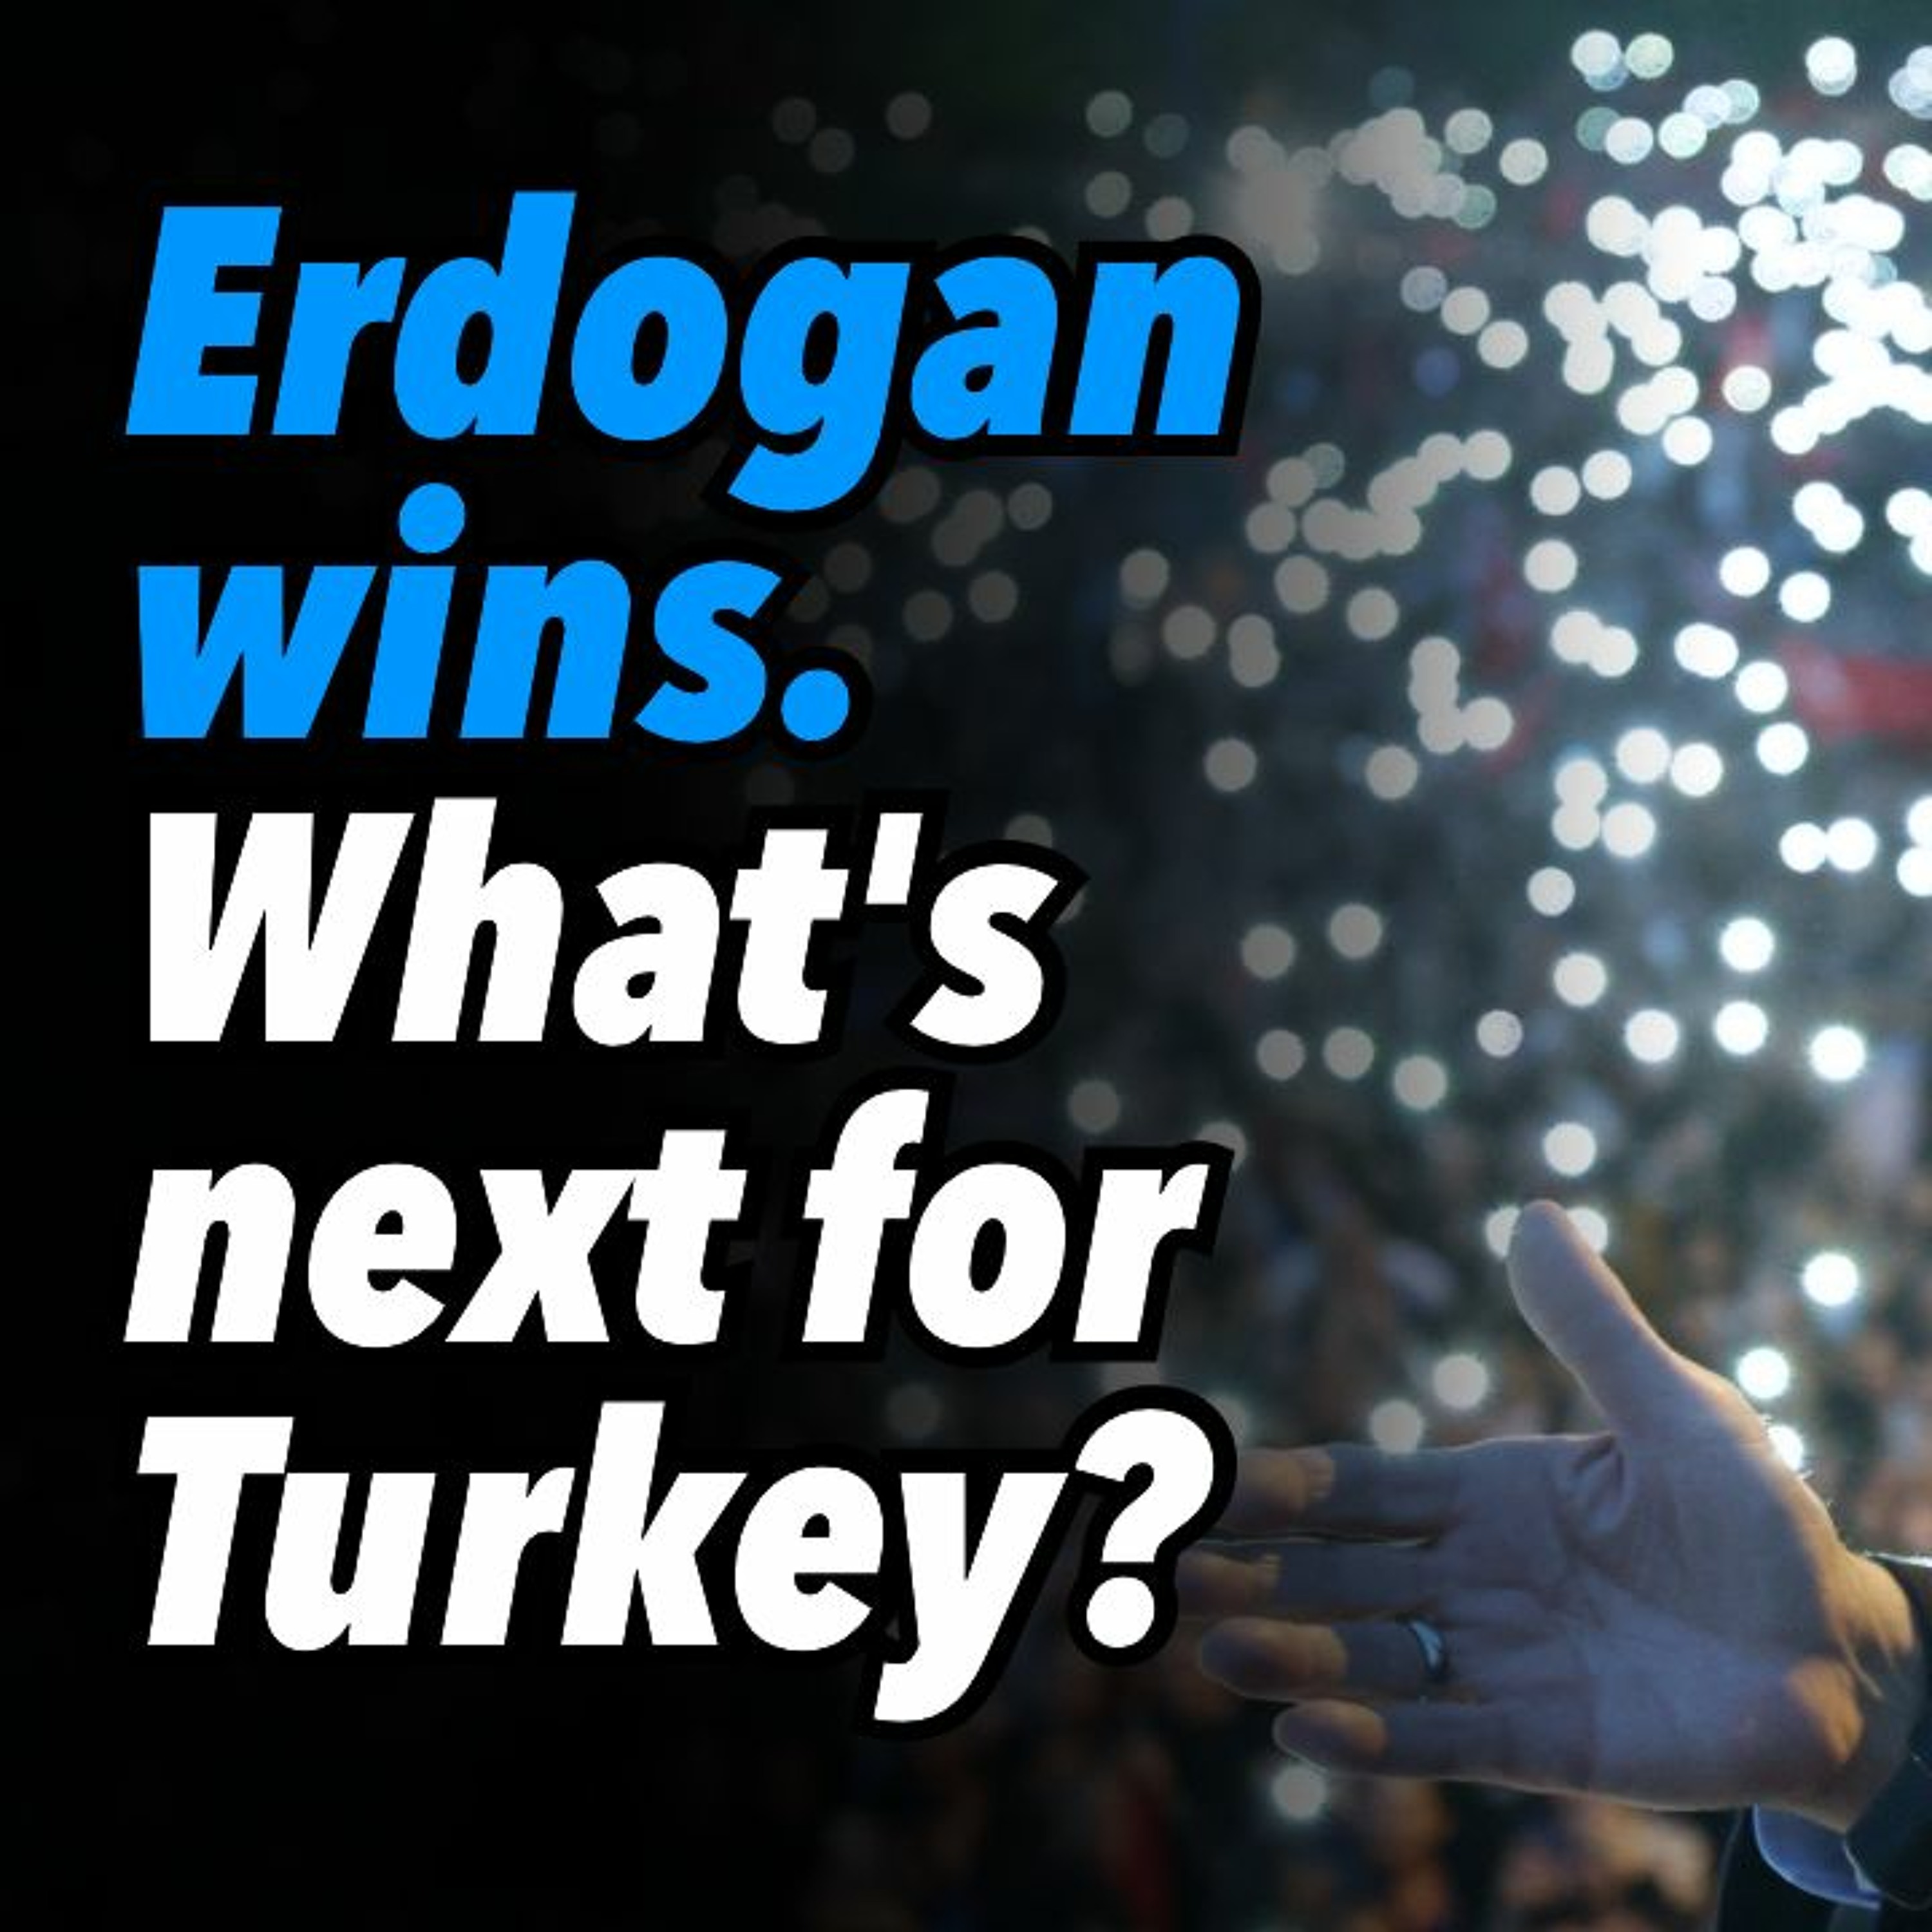 Erdogan wins. What’s next for Turkey?